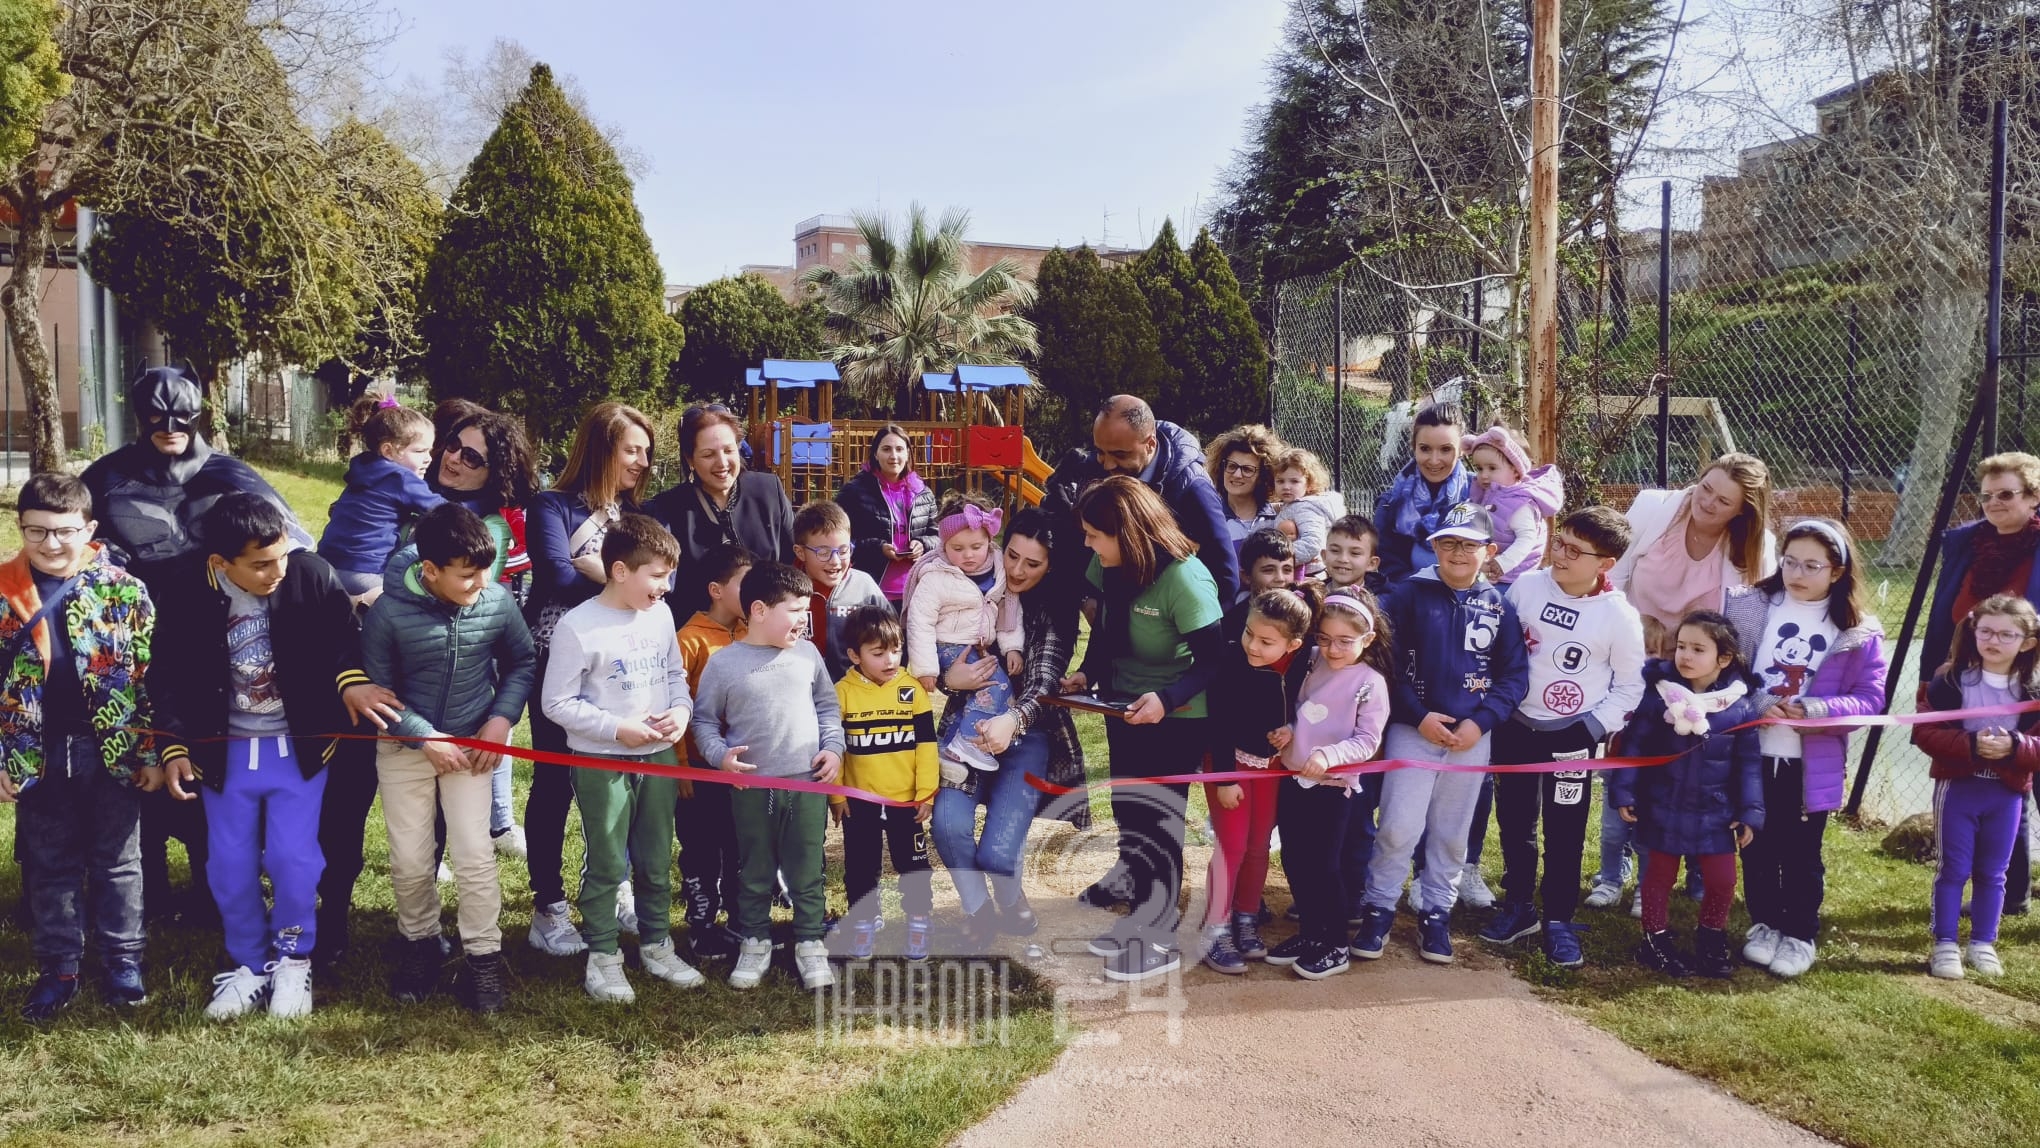 Castell’umberto – L’apertura del parco inclusivo “Allegramente Insieme” a cura dell’Associazione Scacciapensieri